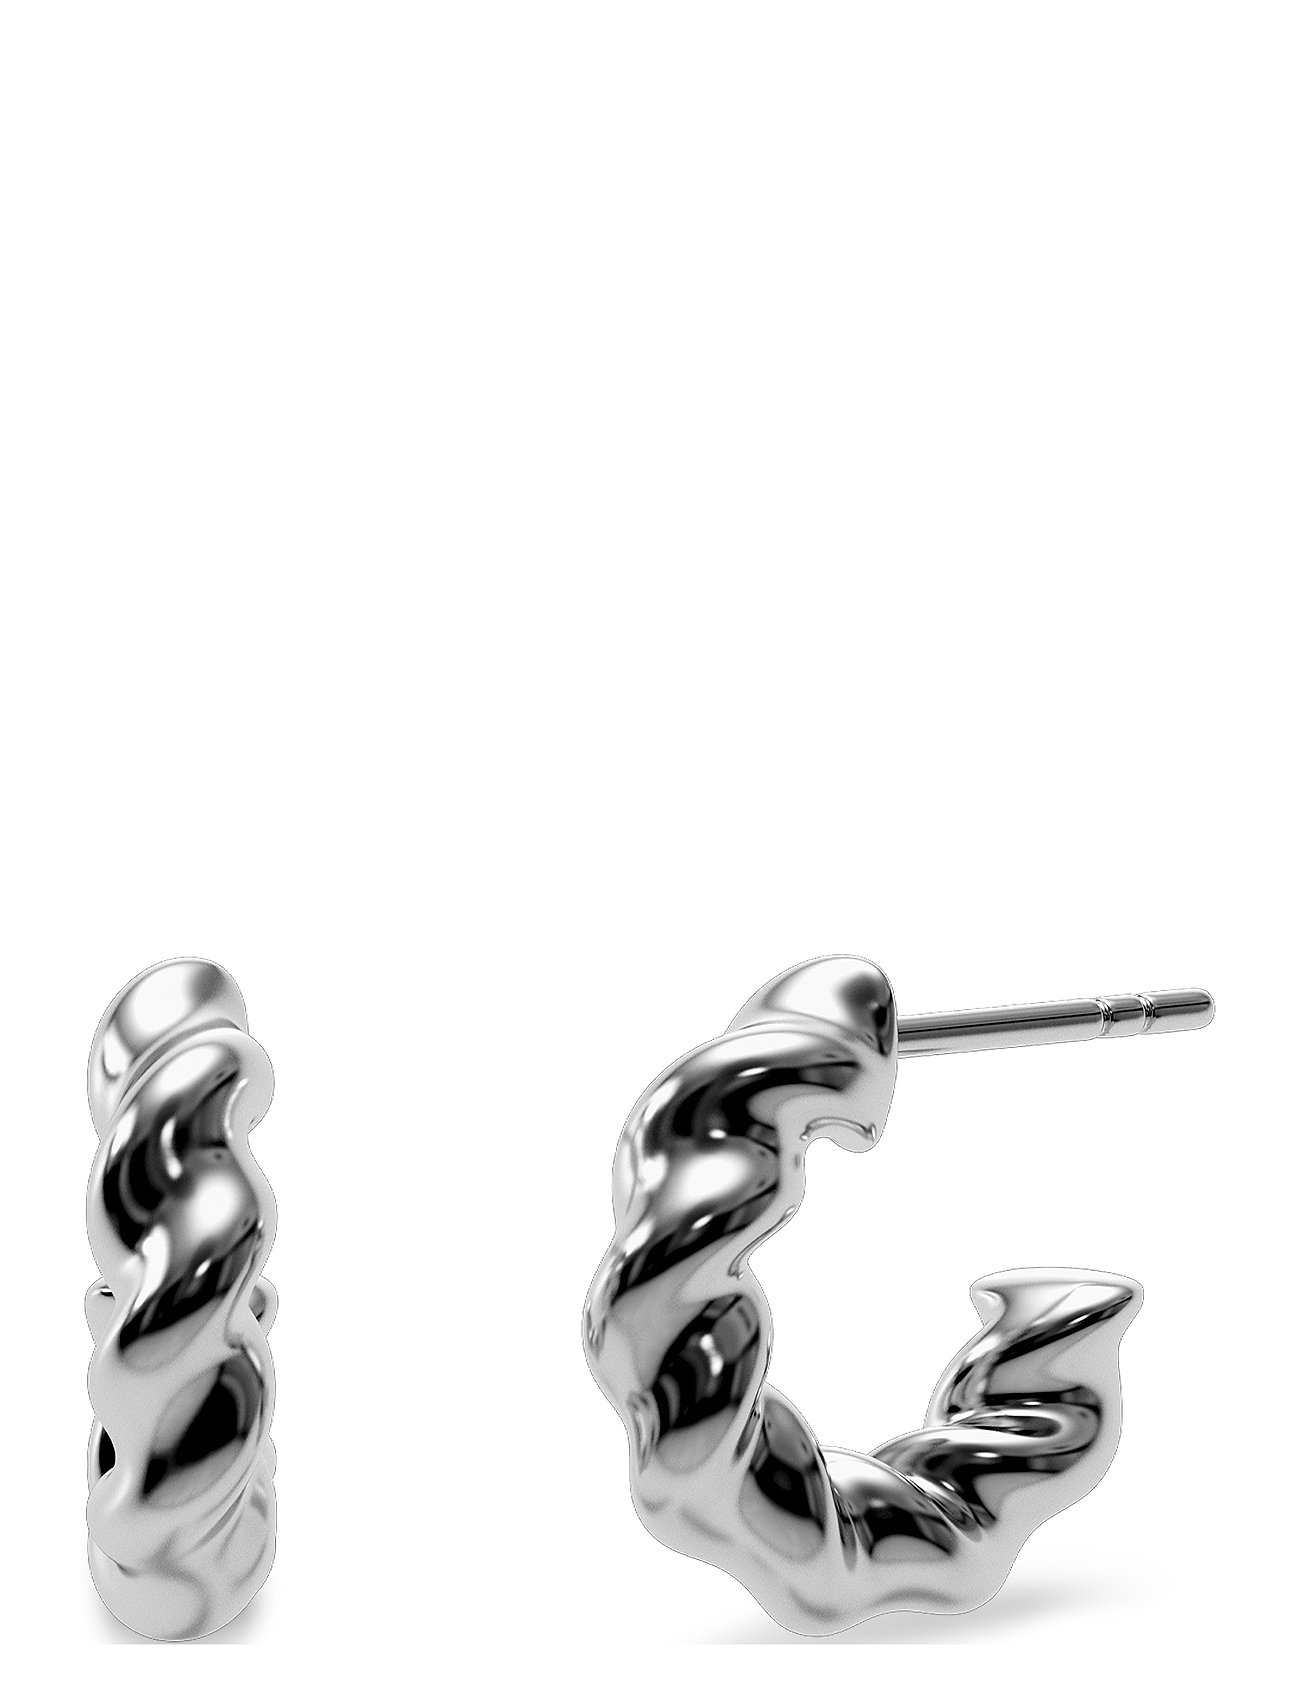 Indio Creoles S Steel Accessories Jewellery Earrings Hoops Silver Edblad